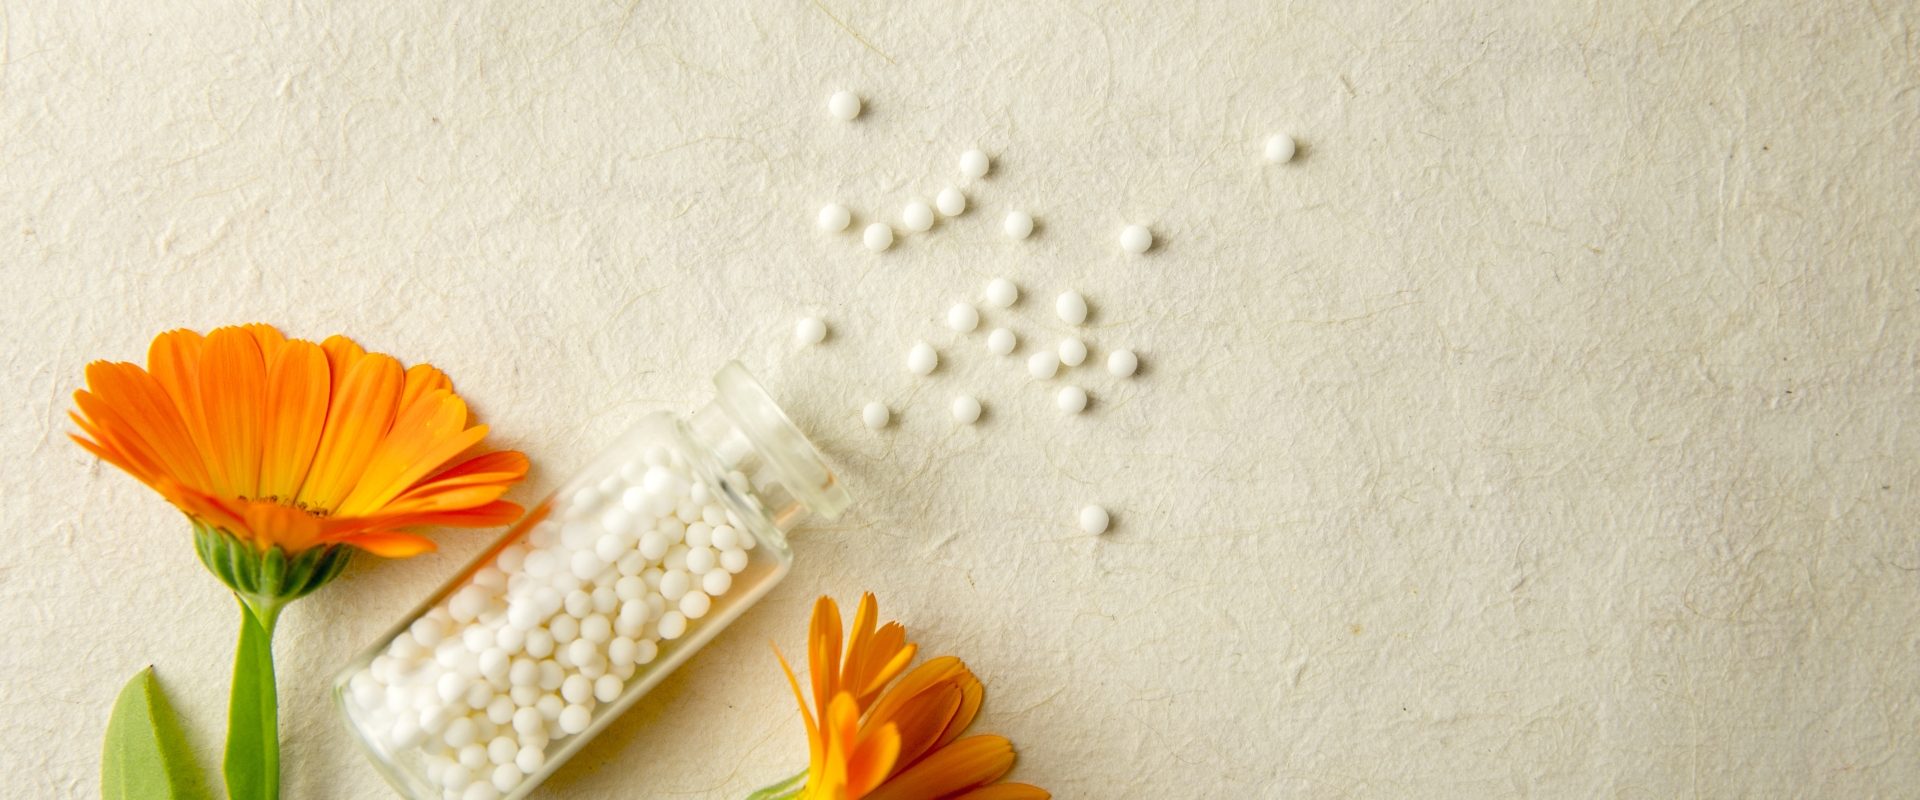 Homeopatia na choroby skóry. Jak leczyć dermatozy naturalnymi sposobami? Kwiaty nagietka leżą obok fiolki z lekami homeopatycznymi.